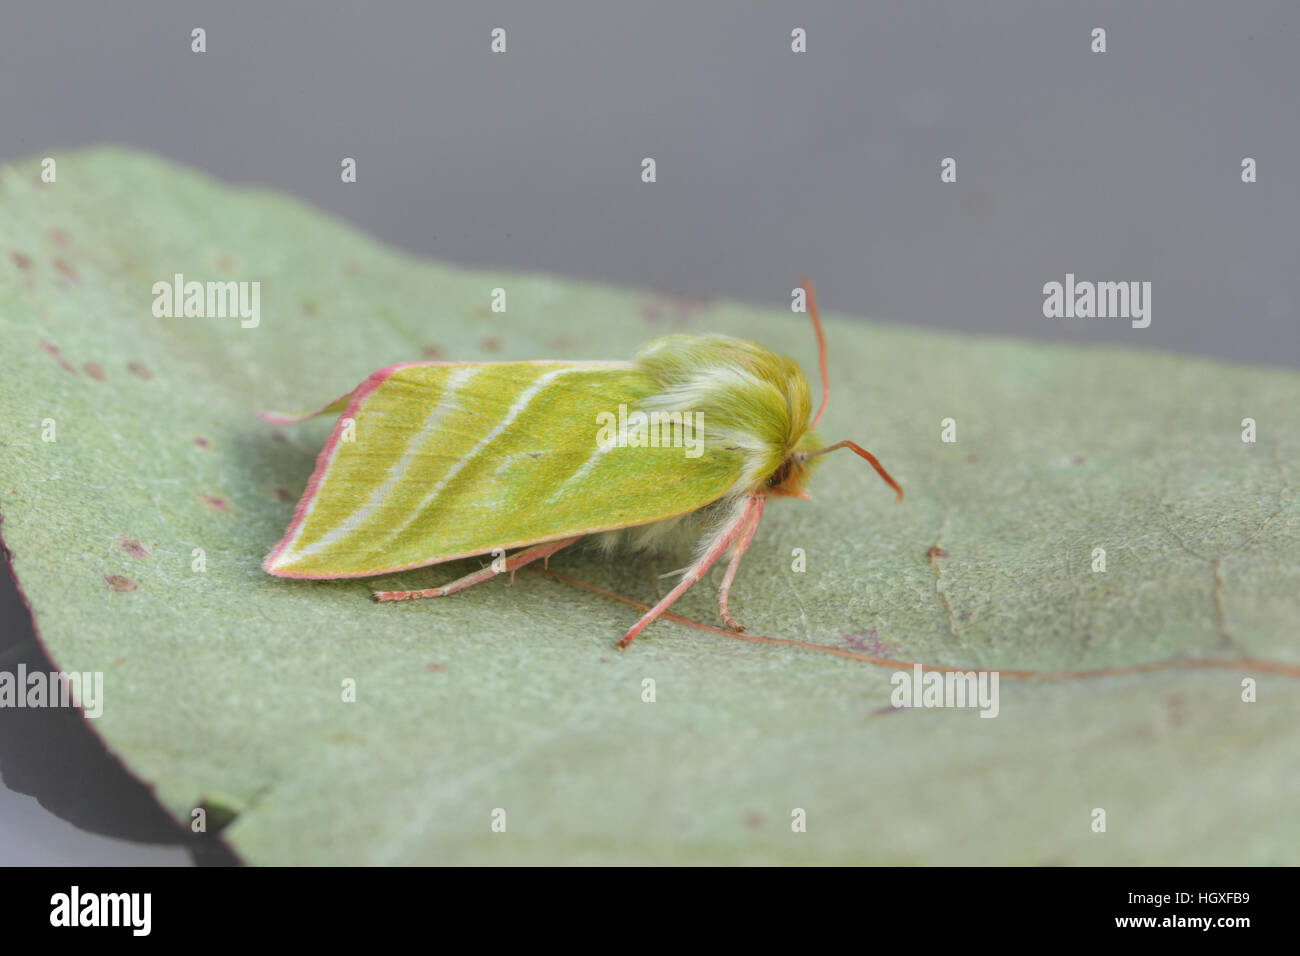 Grüne Silverlines (Pseudoips Prasinana), grün und weiß gestreift Motte, thront auf einem Blatt Stockfoto